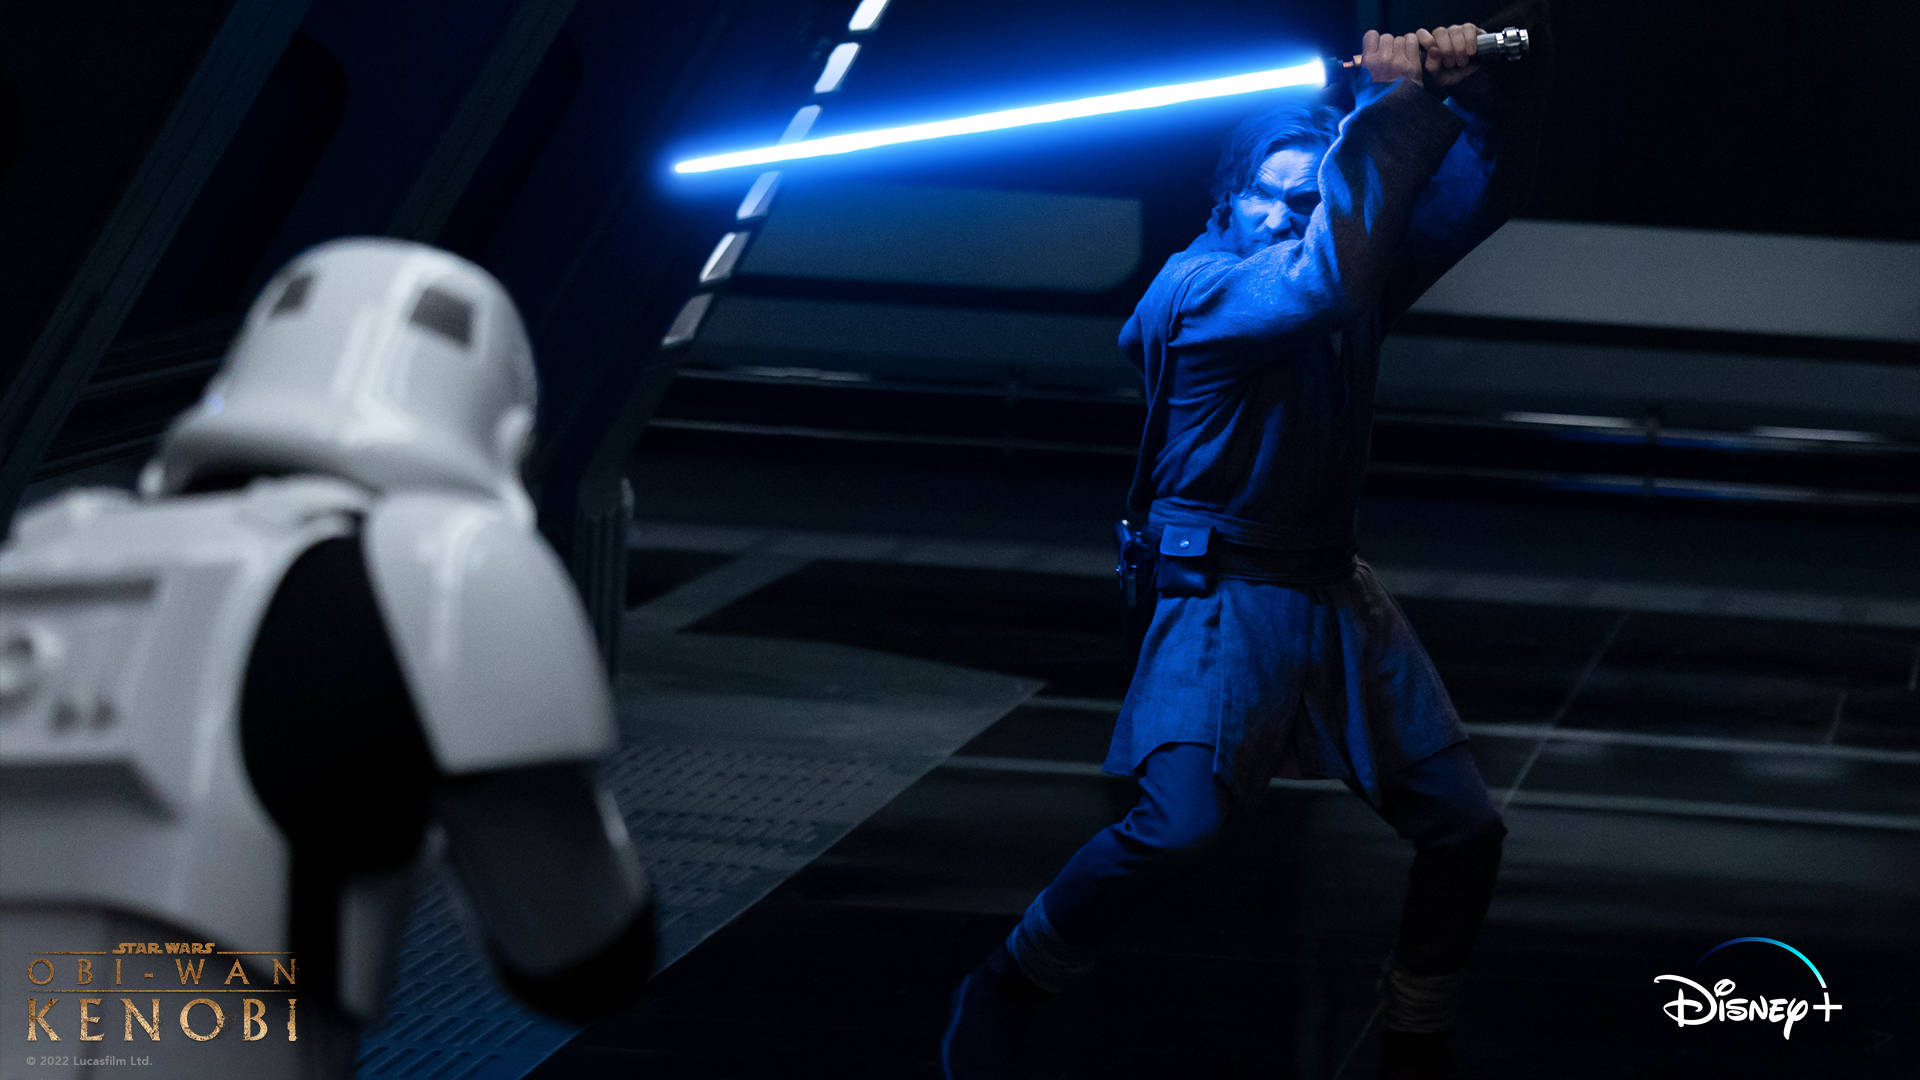 Obi Wan Kenobi Vs. Stormtrooper Background